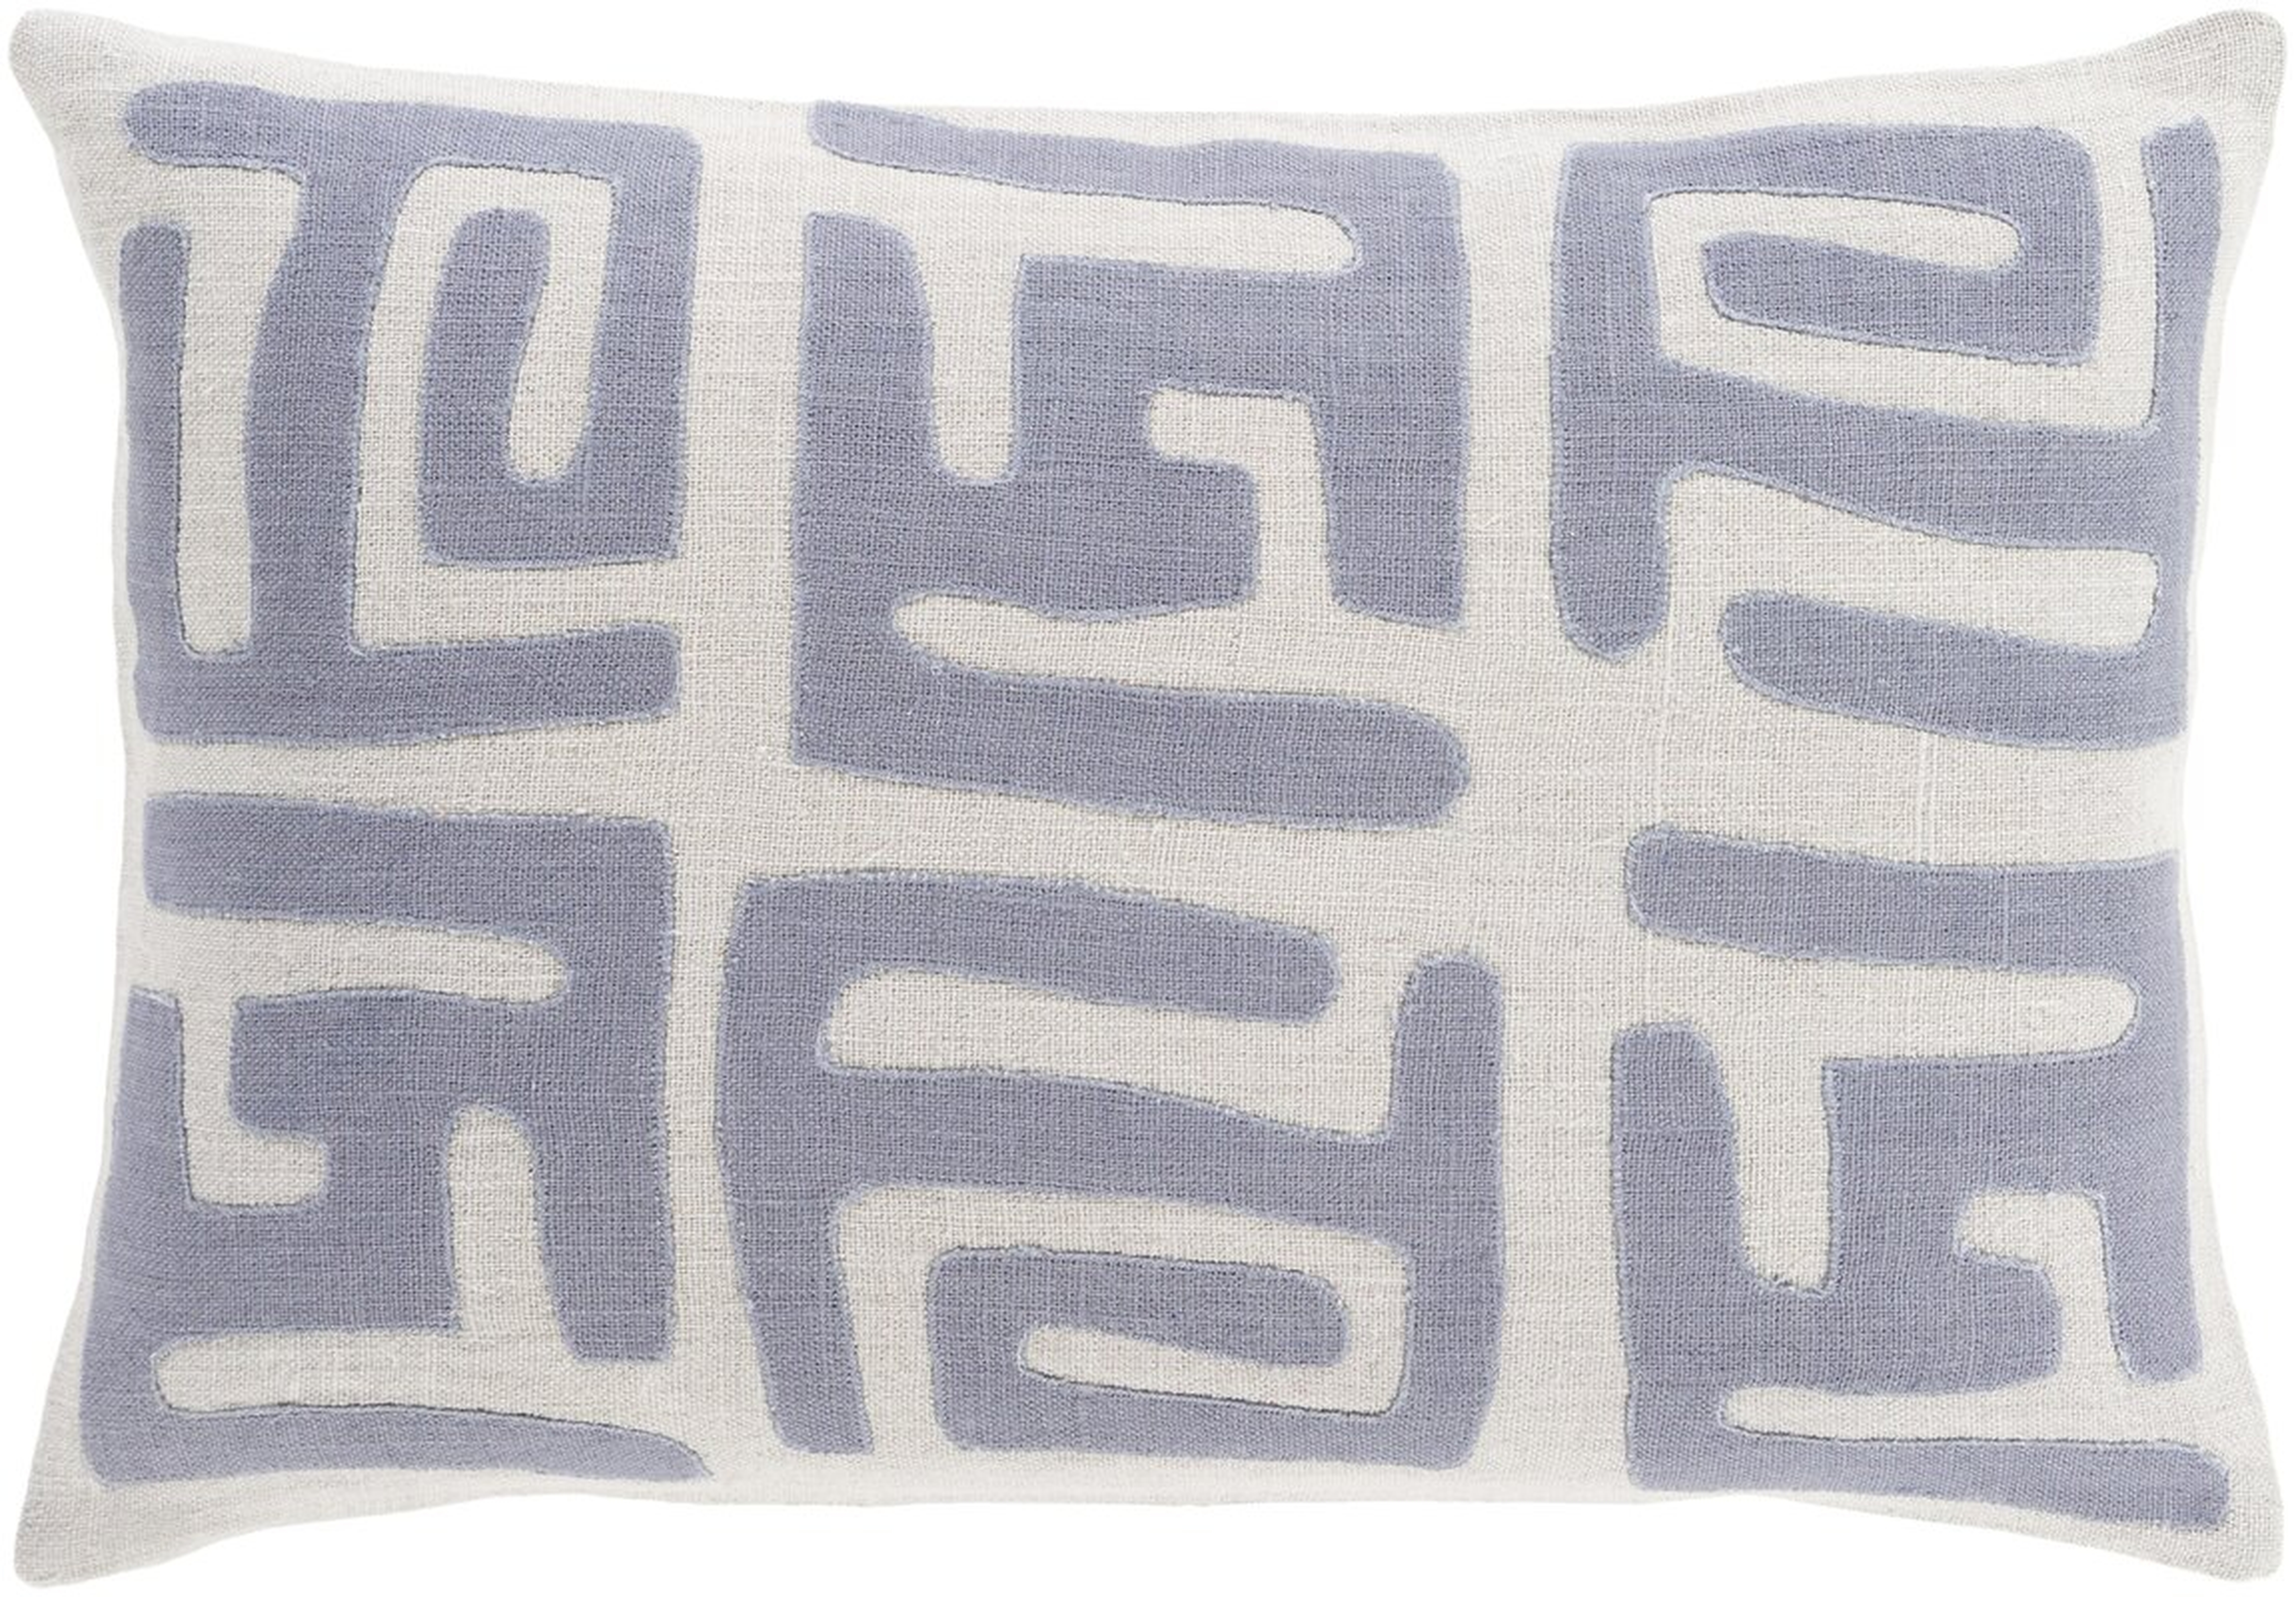 Bomaderry Linen Lumbar Pillow Cover - Blue/Gray - AllModern